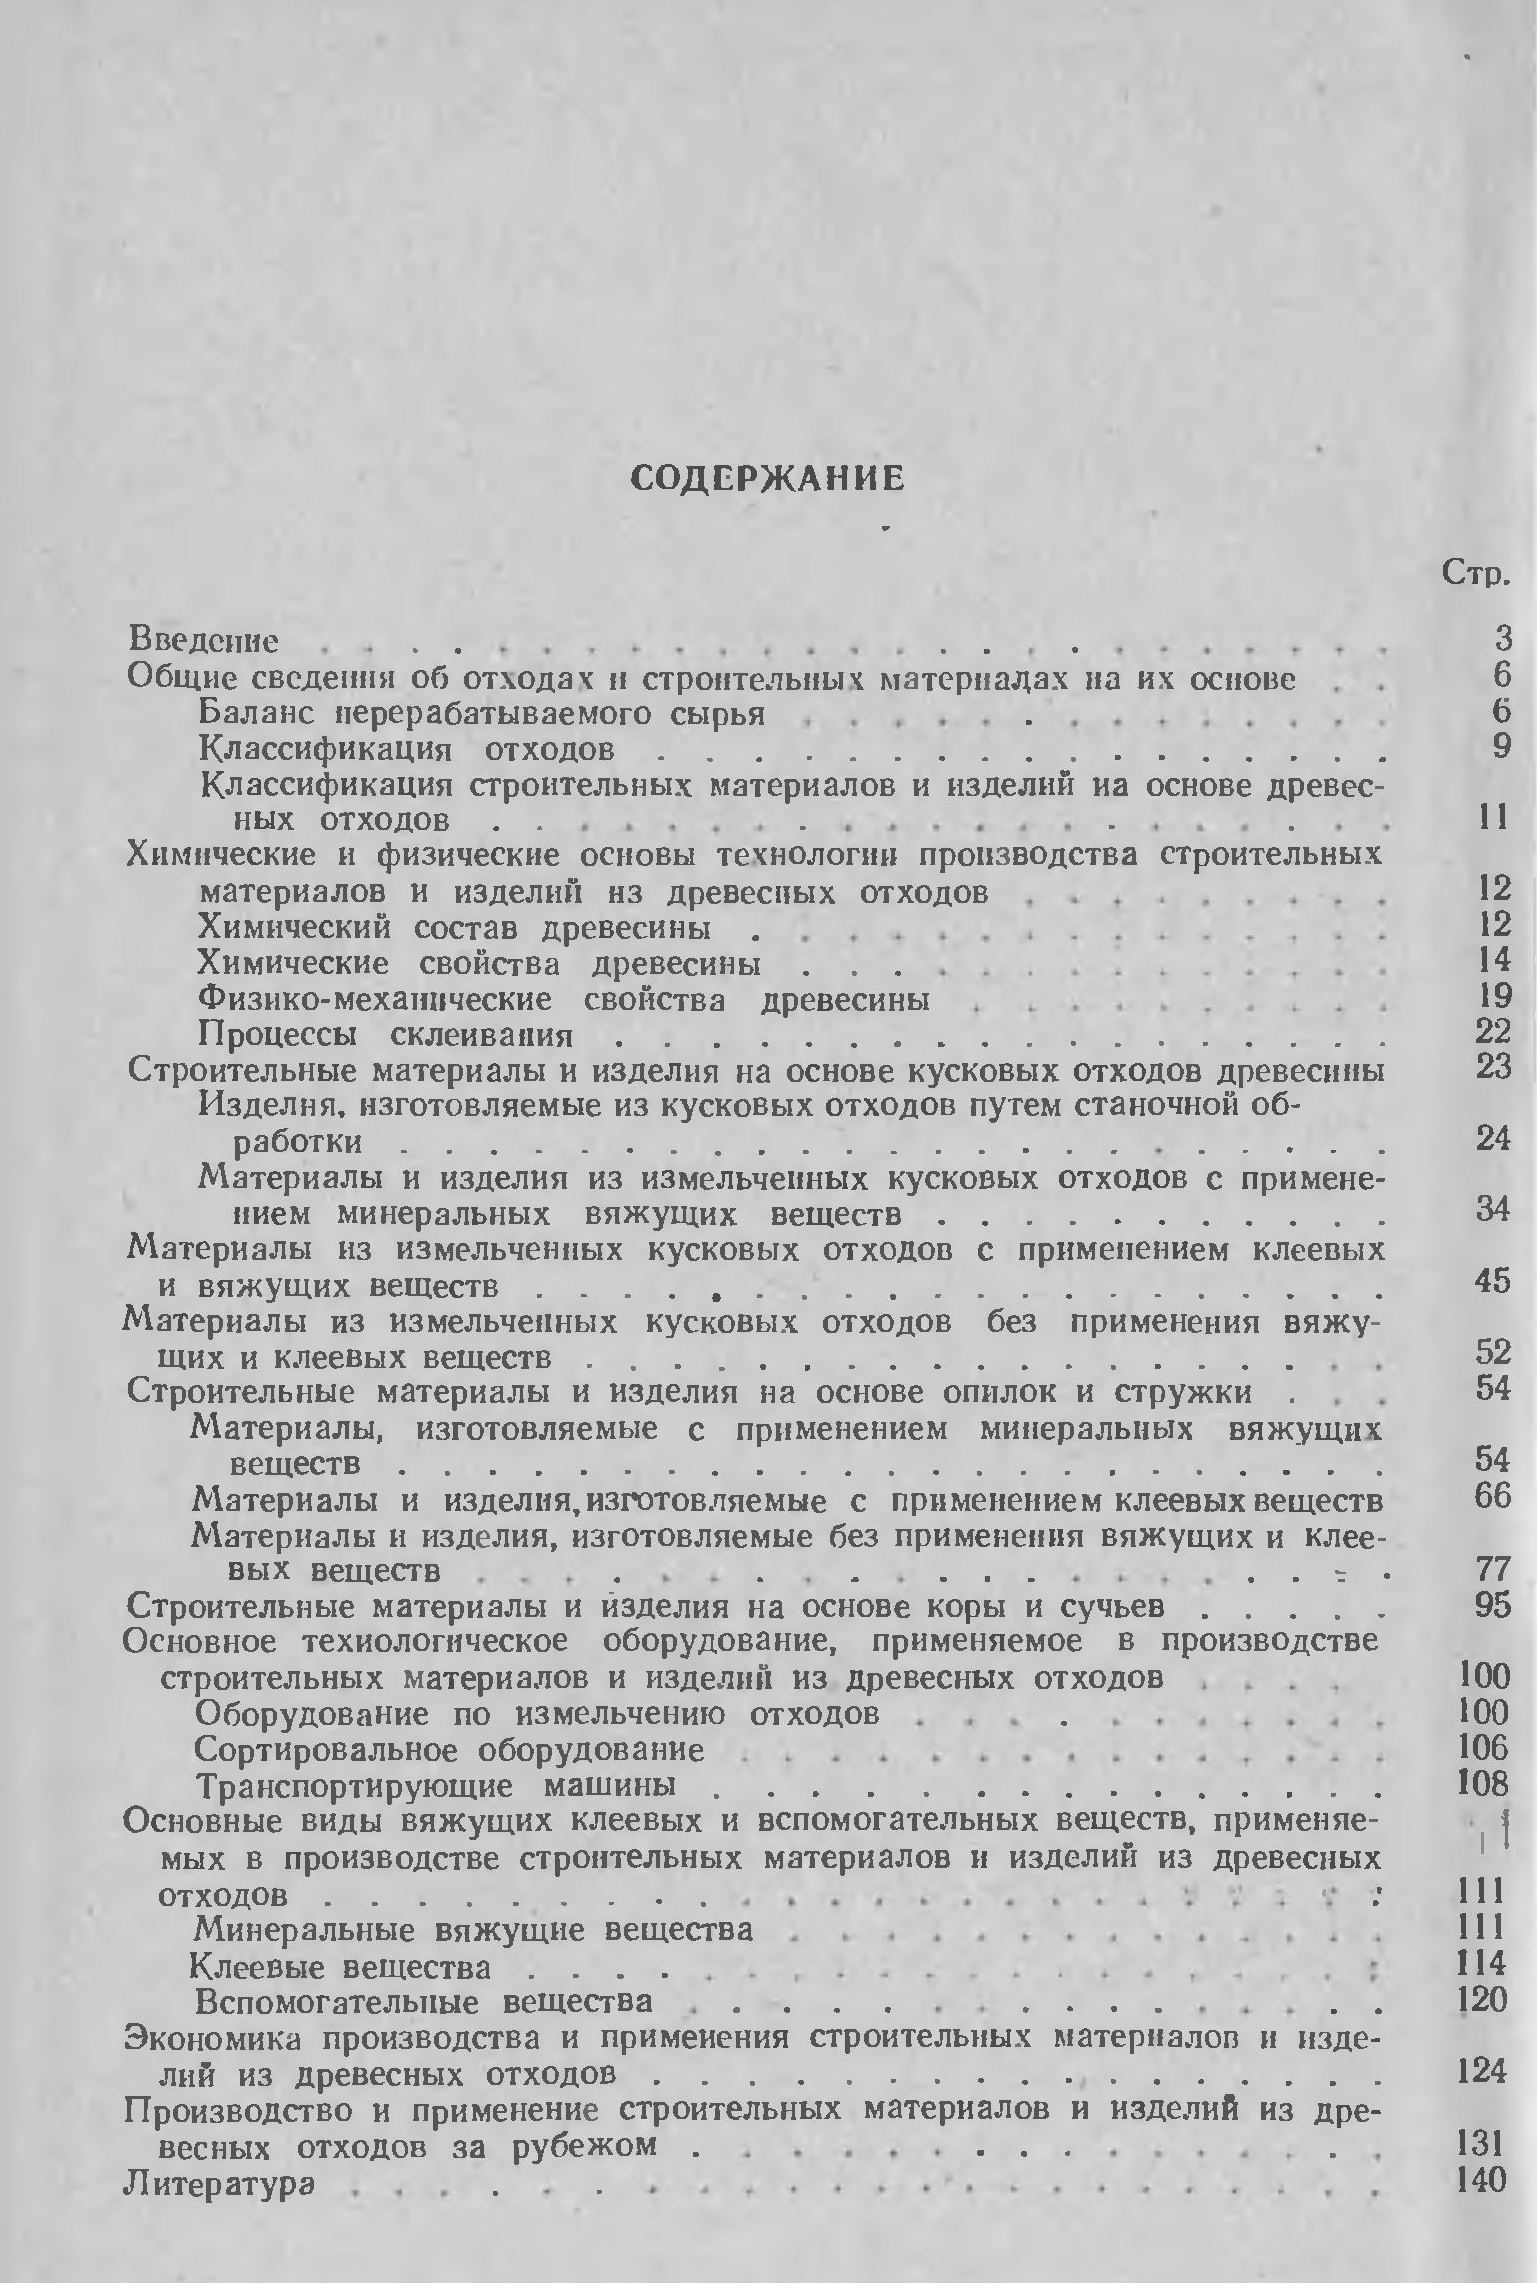 Производство строительных материалов из древесных отходов / Коротаев Э. И., Симонов В. И. — Москва : Лесная промышленность, 1972